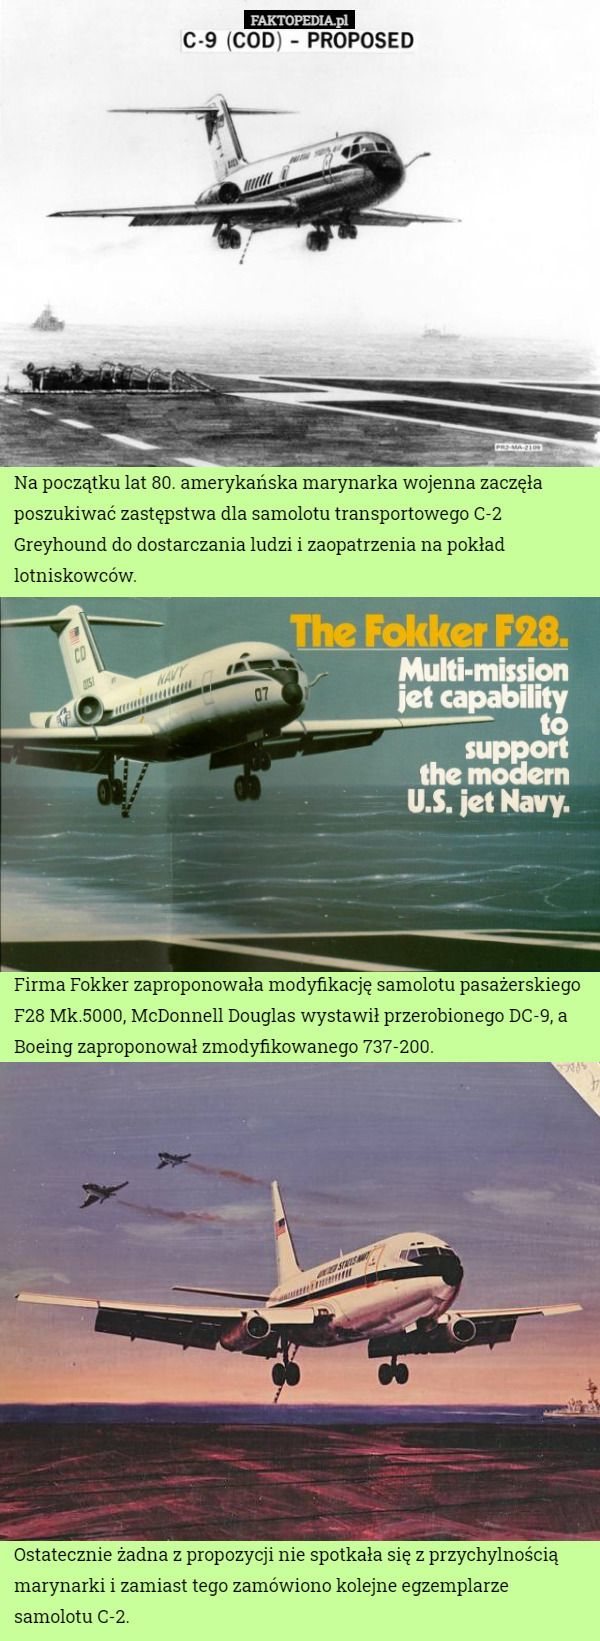 Na początku lat 80. amerykańska marynarka wojenna zaczęła poszukiwać zastępstwa dla samolotu transportowego C-2 Greyhound do dostarczania ludzi i zaopatrzenia na pokład lotniskowców. Firma Fokker zaproponowała modyfikację samolotu pasażerskiego F28 Mk.5000, McDonnell Douglas wystawił przerobionego DC-9, a Boeing zaproponował zmodyfikowanego 737-200. Ostatecznie żadna z propozycji nie spotkała się z przychylnością marynarki i zamiast tego zamówiono kolejne egzemplarze samolotu C-2. 